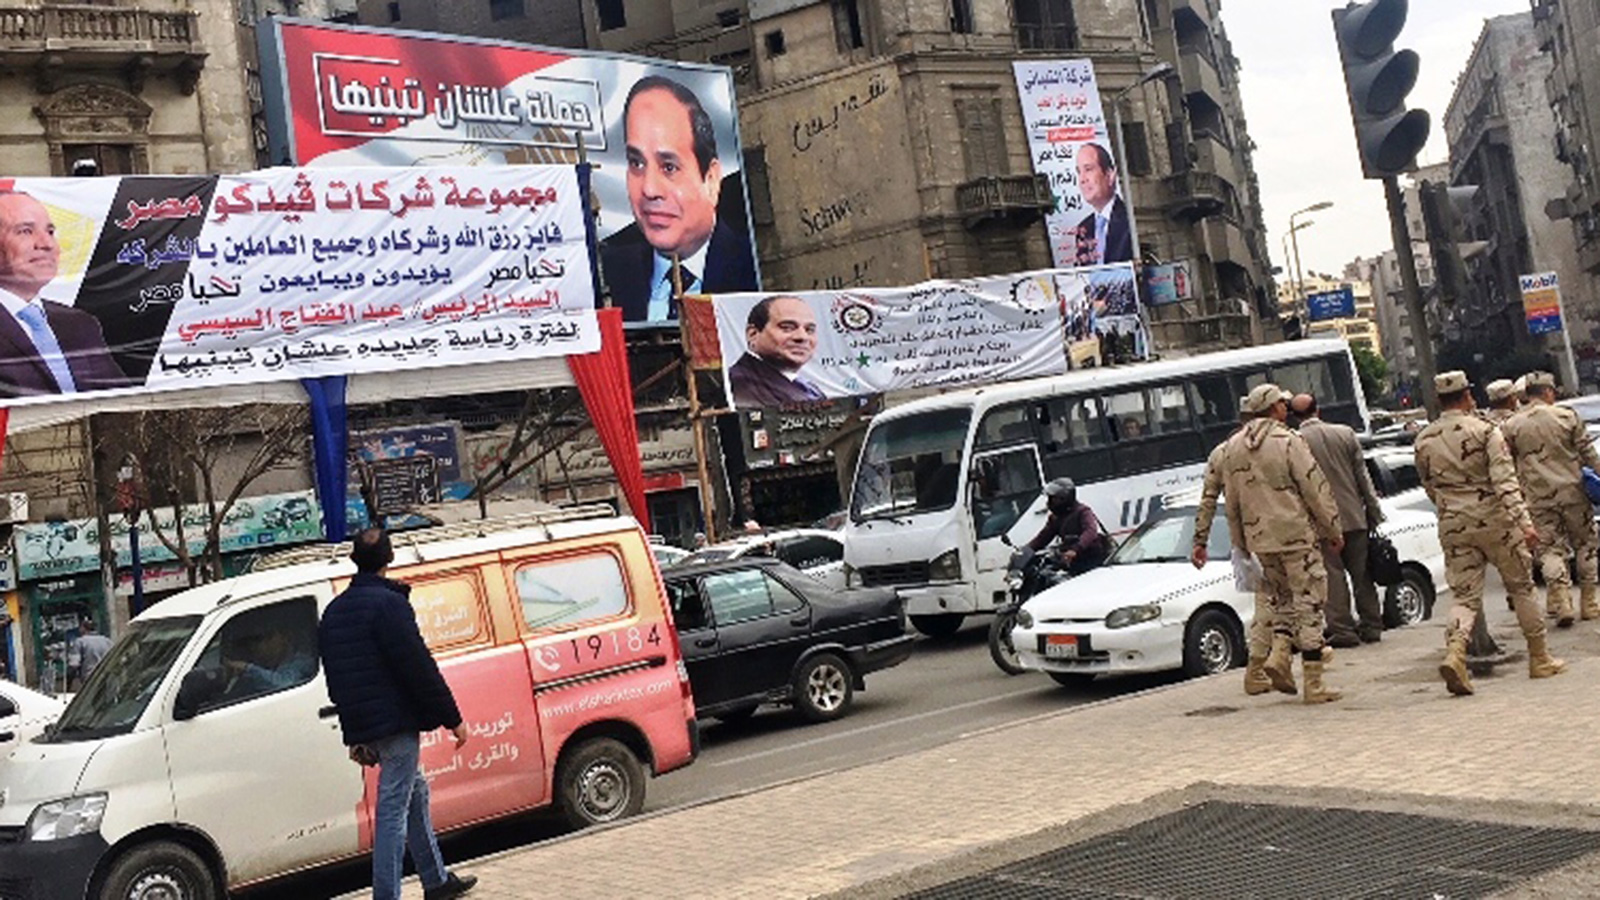 ‪لافتات دعائية للسيسي علقتها شركات قبل الانتخابات الرئاسية‬  (الجزيرة)